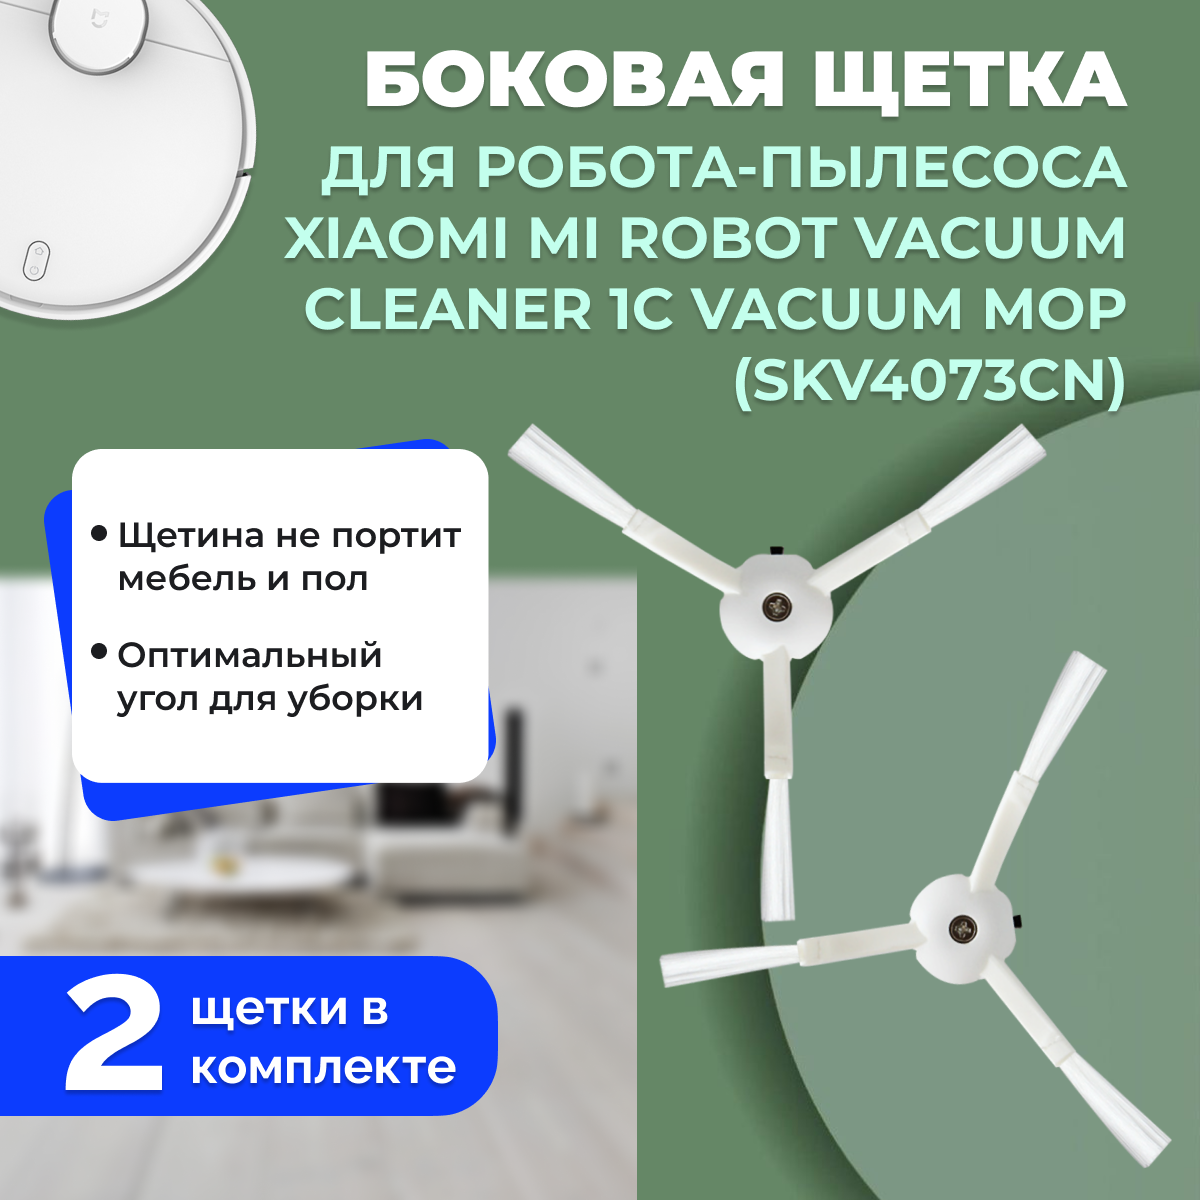 Боковые щетки для робота-пылесоса Xiaomi Mi Robot Vacuum Cleaner 1C Vacuum Mop (SKV4073CN), 2 штуки 558523